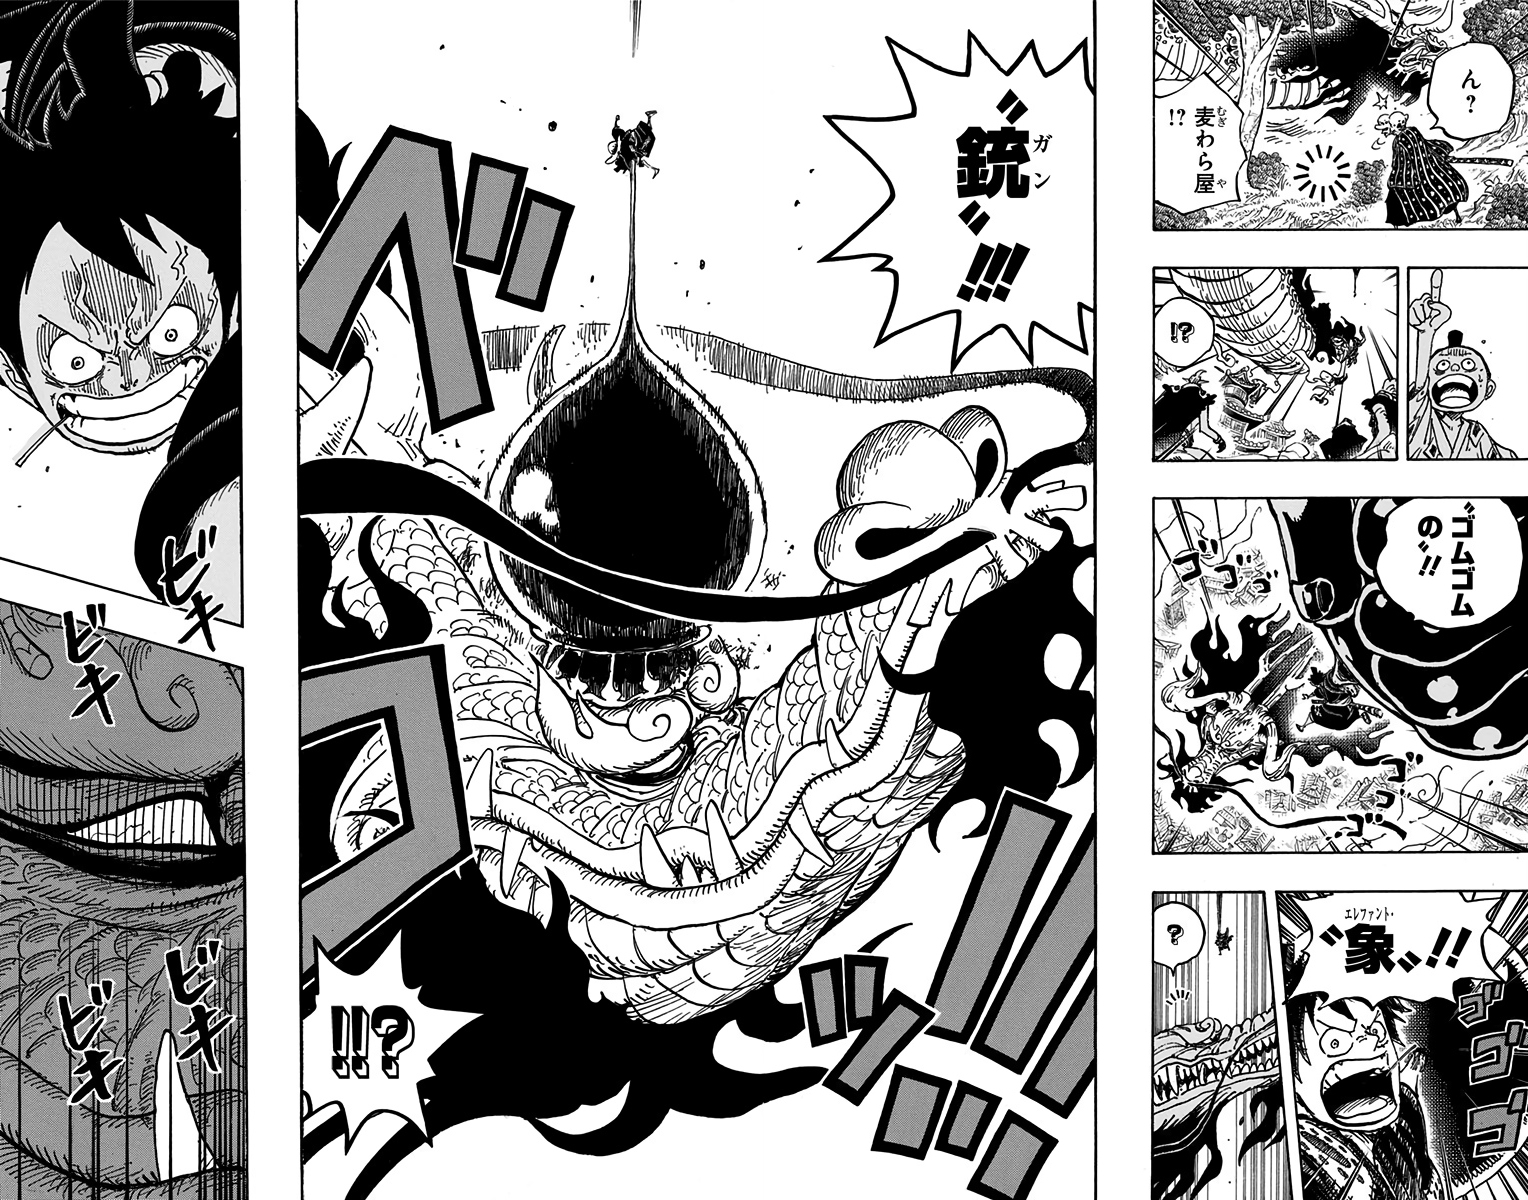 Spoiler One Piece Chapter 1000 Spoiler Summaries And Images Worstgen